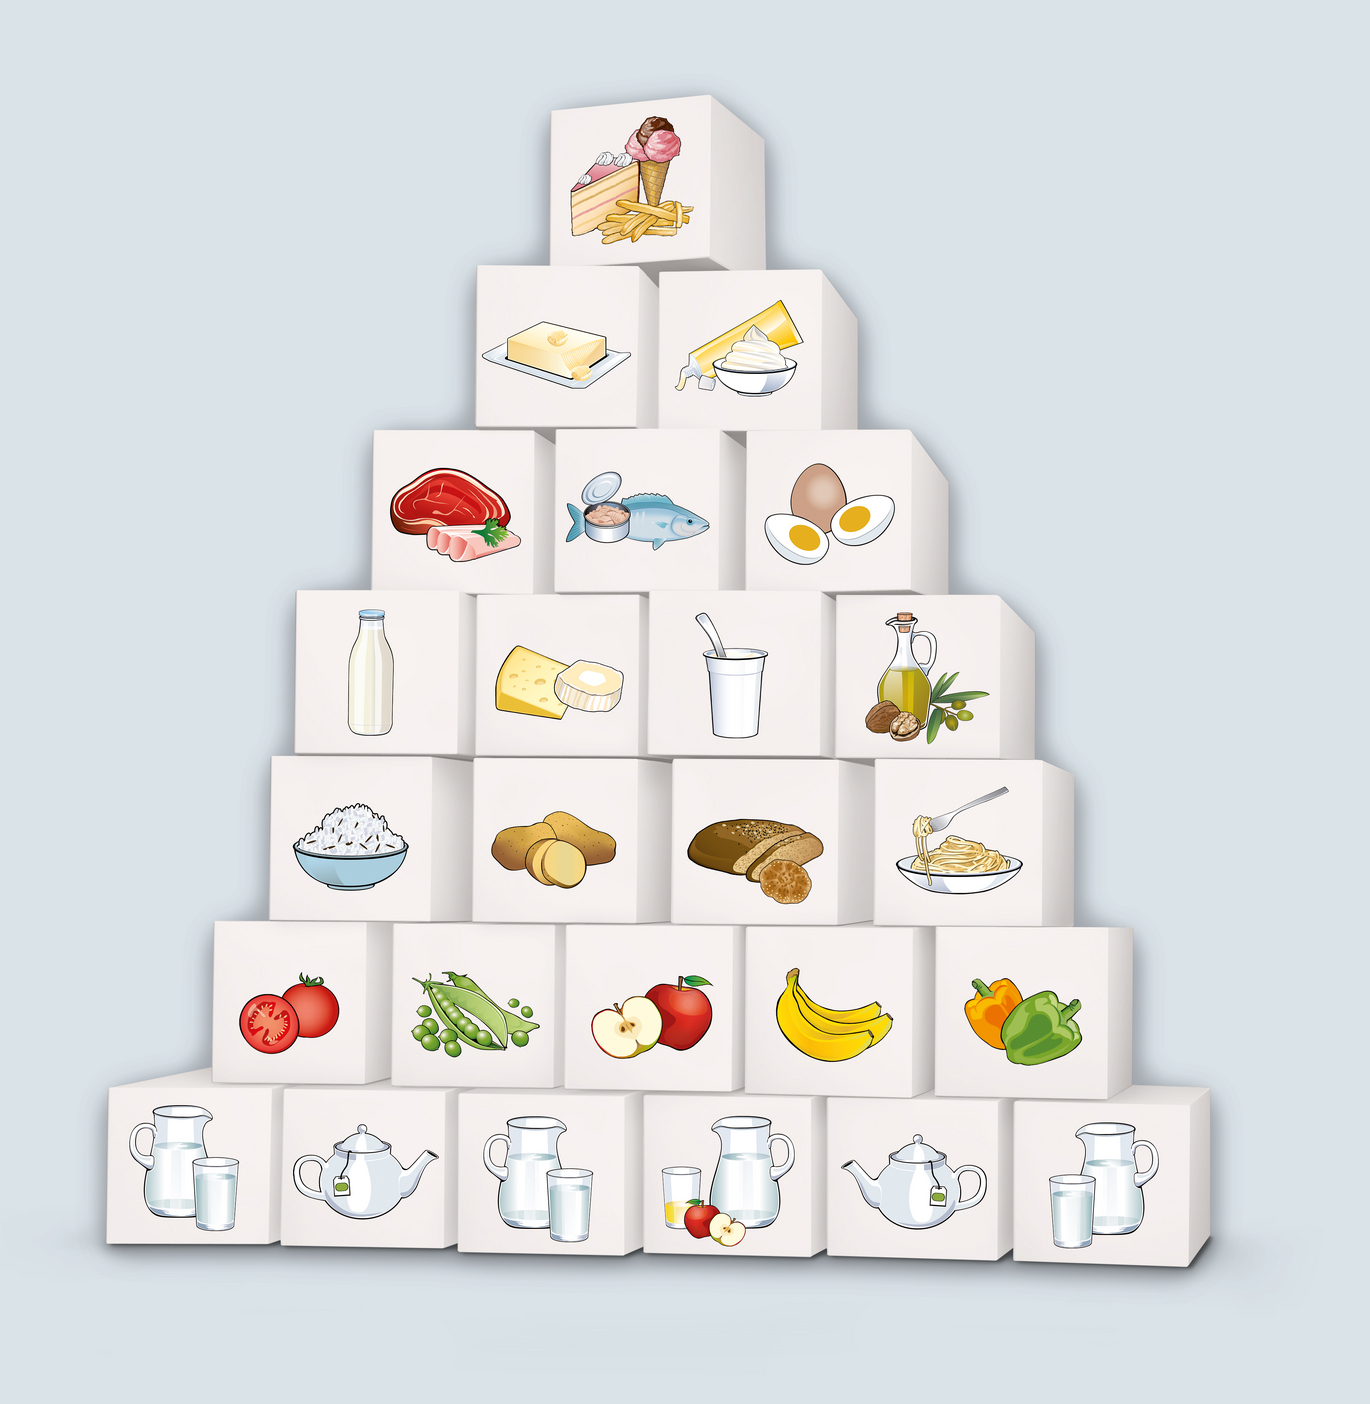 Ernährungspyramide (Vergrößert das Bild in einem Dialog Fenster)